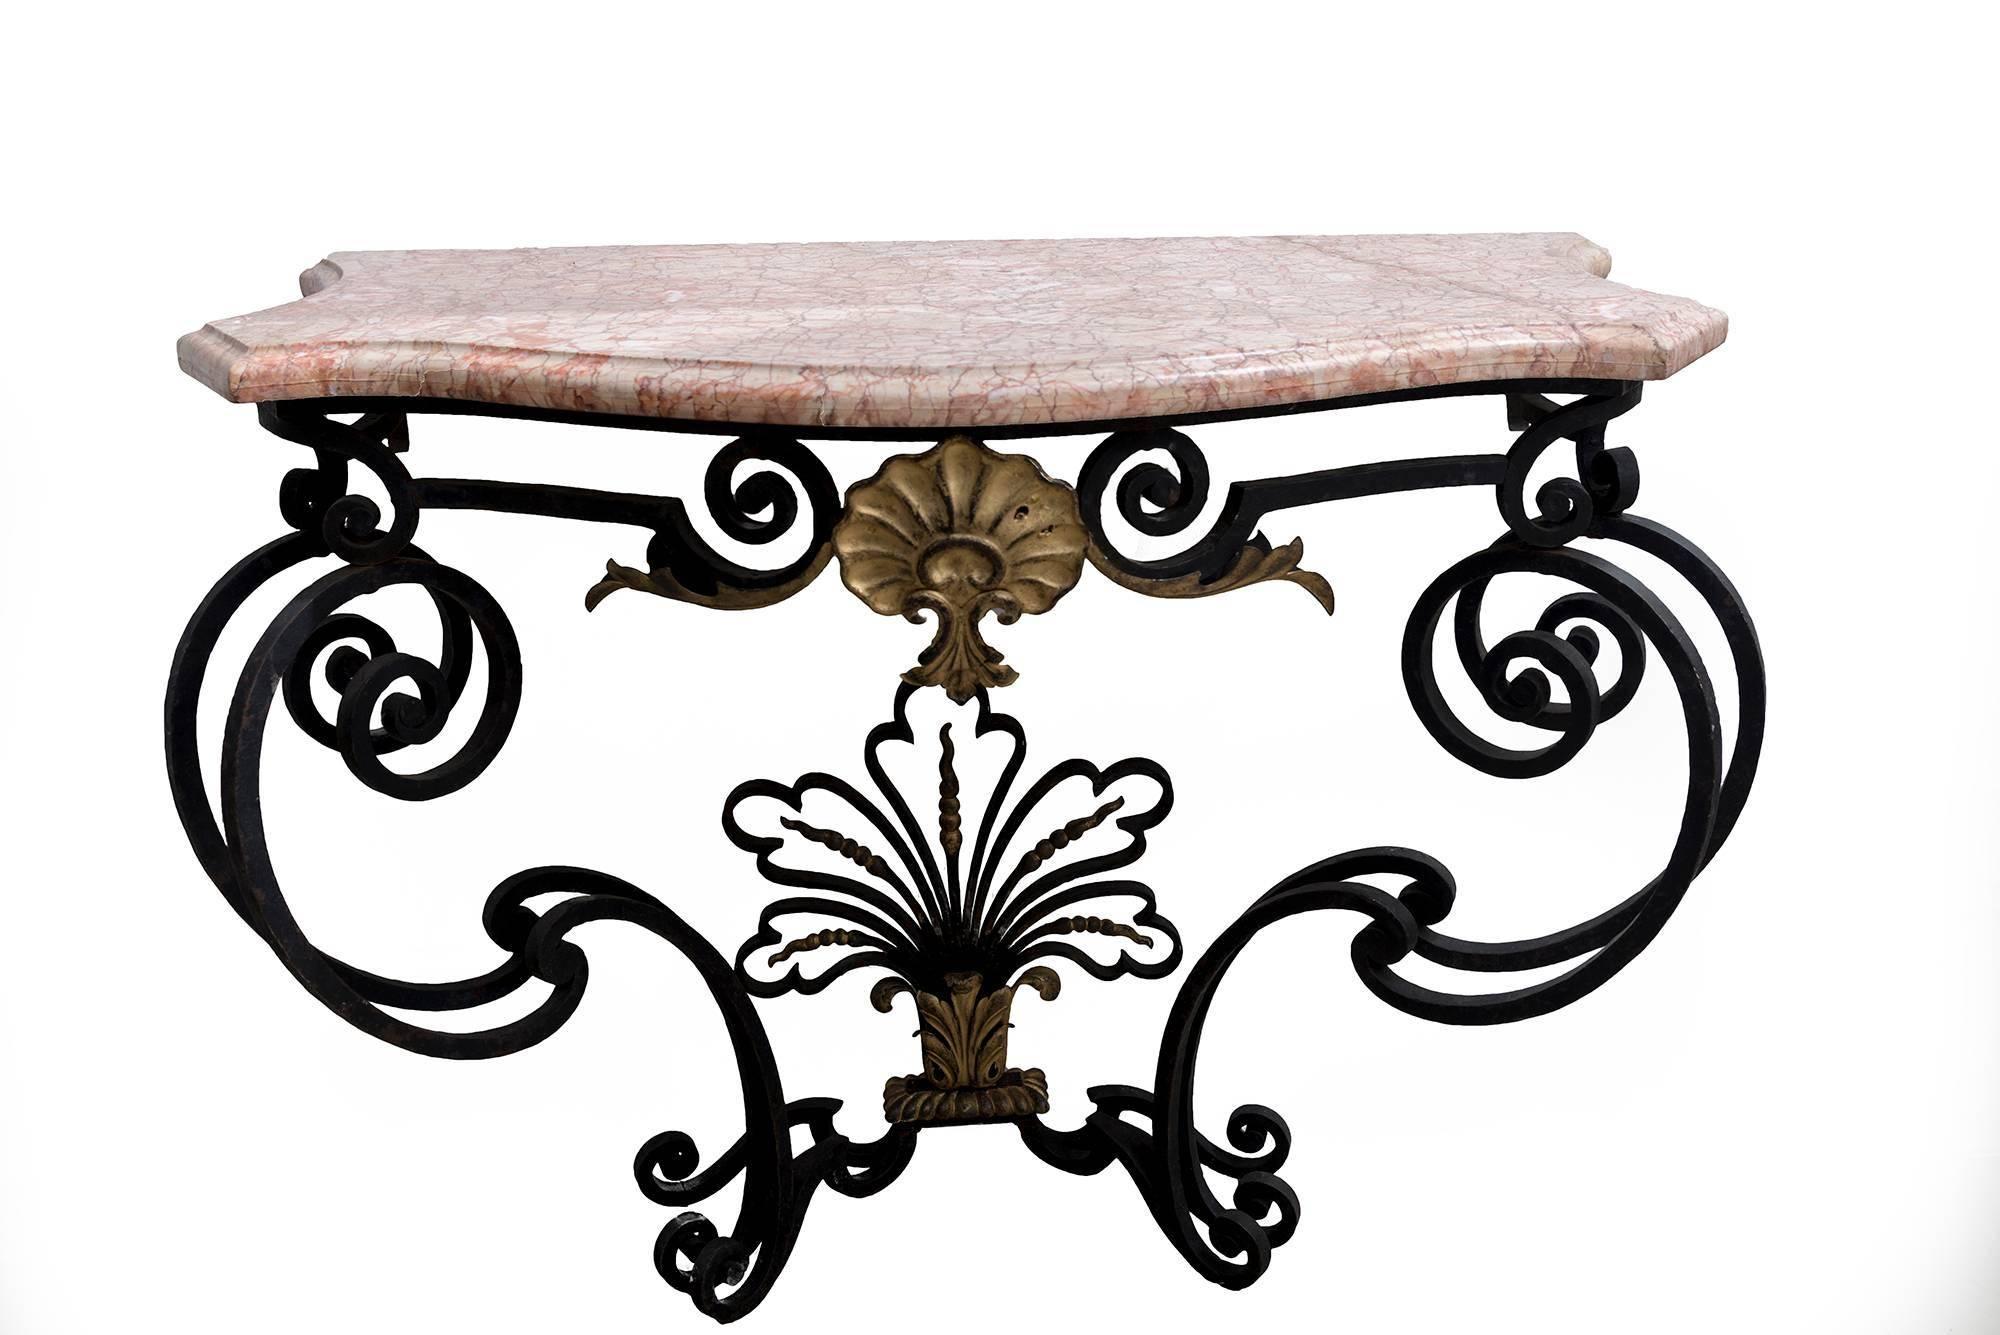 Une belle table console en fer forgé naturel avec un dessus en marbre rose. Dessin détaillé en dessous avec dorure sur base en fer forgé.